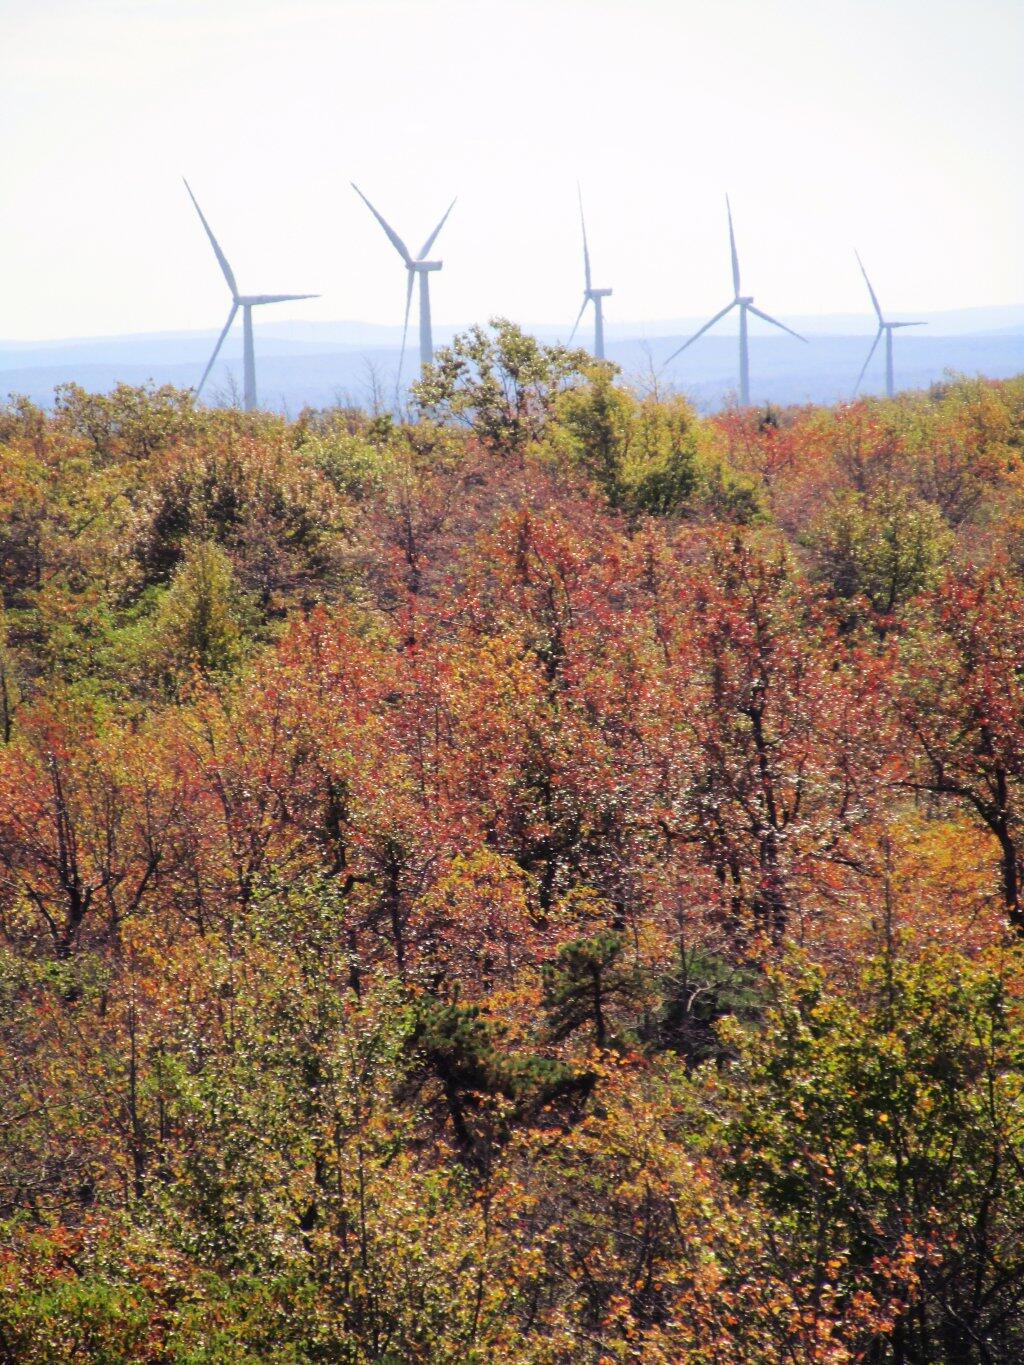  Negro Mountain Wind Farm